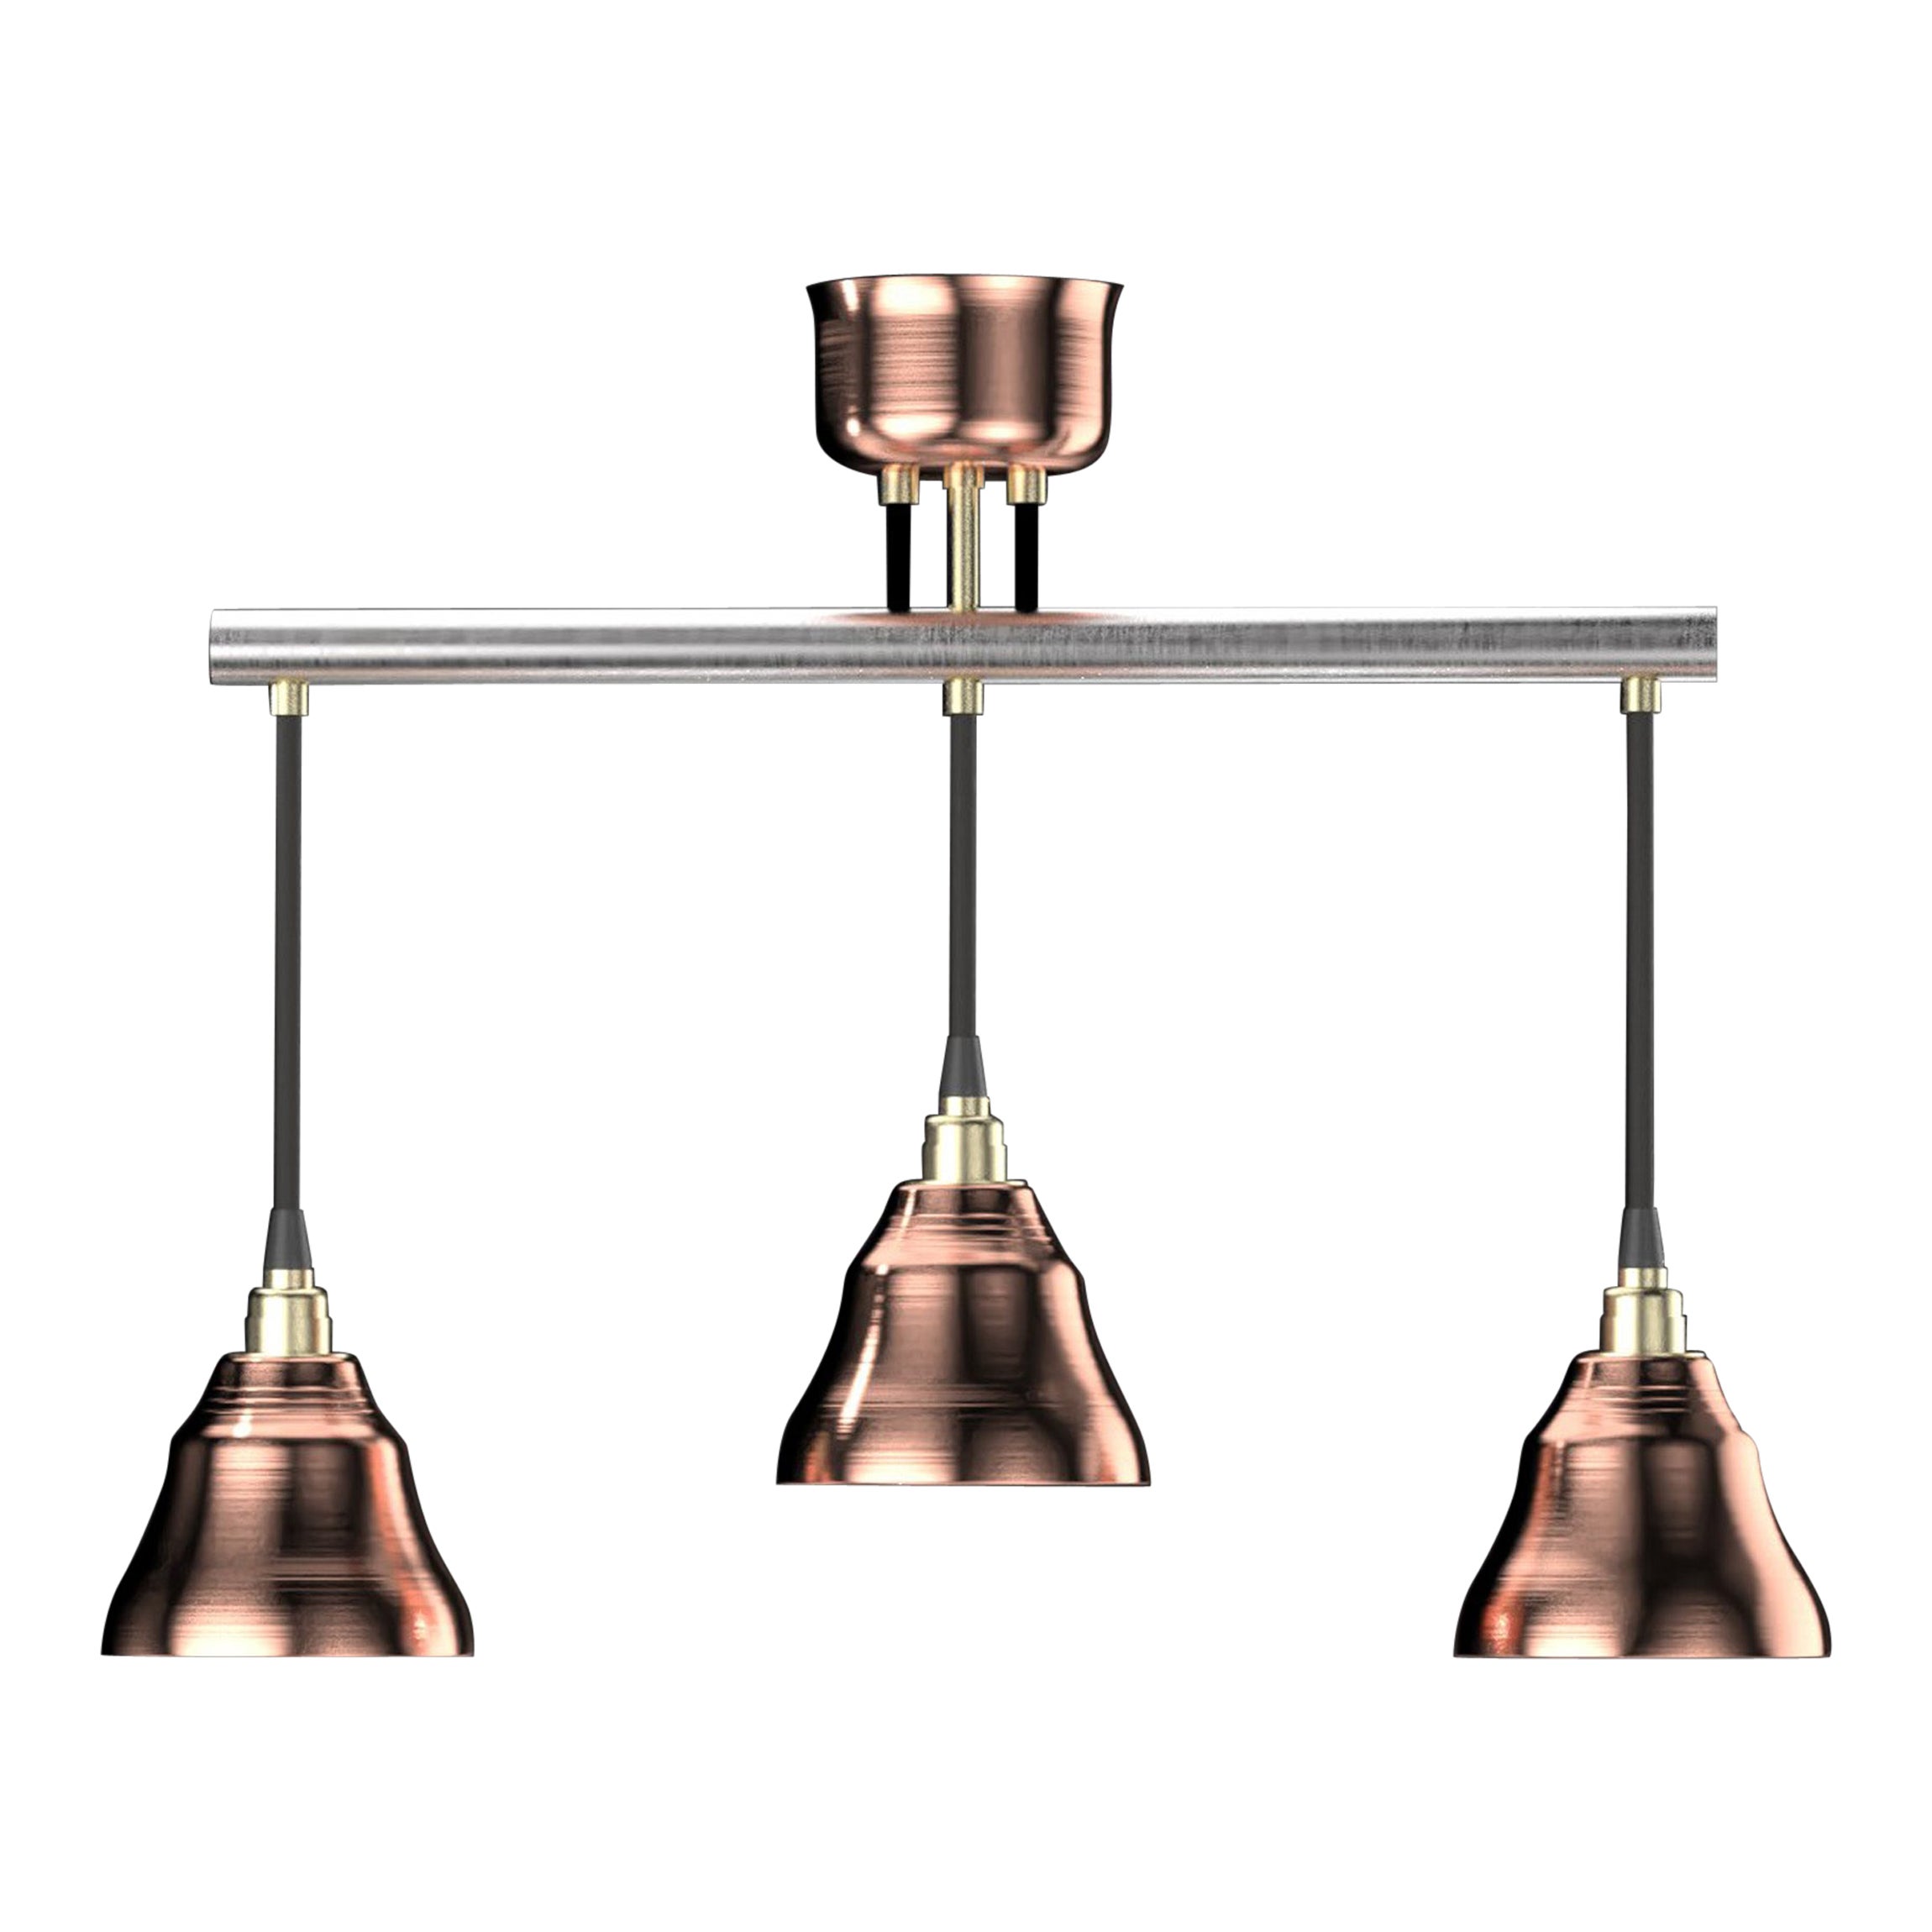 Edimate Stainless Steel / Copper Spot V3 Ceiling Light, Handmade in France For Sale